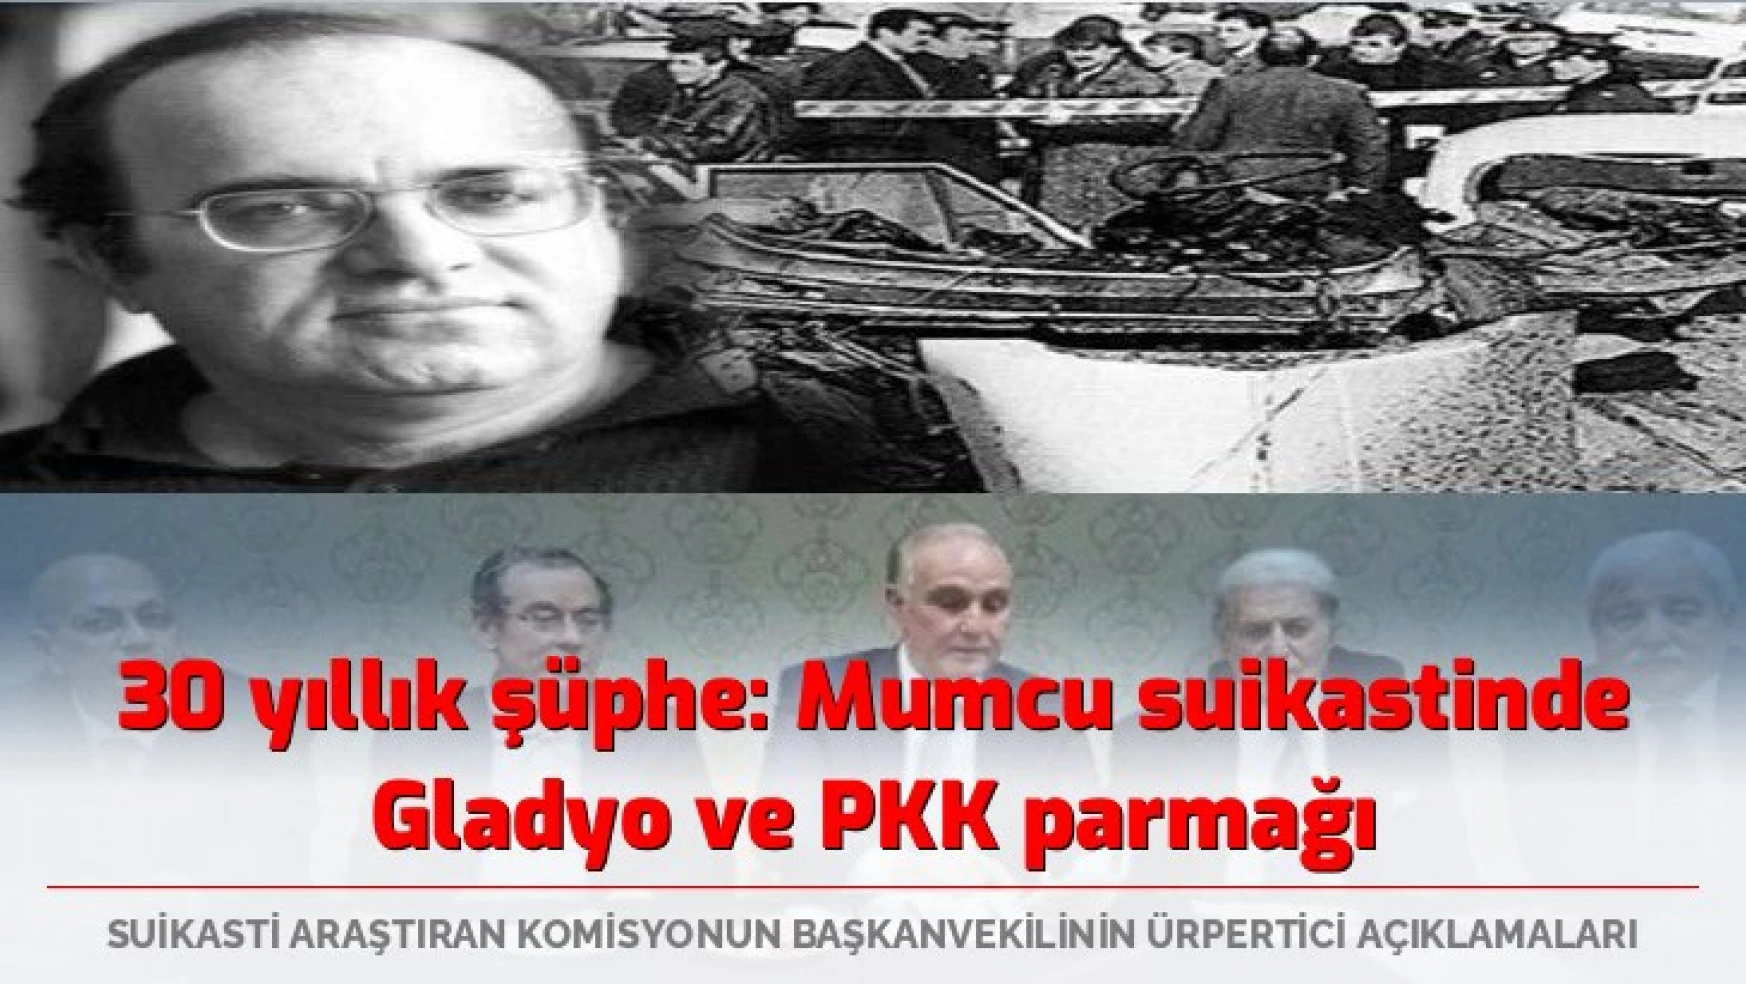 30 yıllık şüphe: Mumcu suikastinde Gladyo ve PKK parmağı